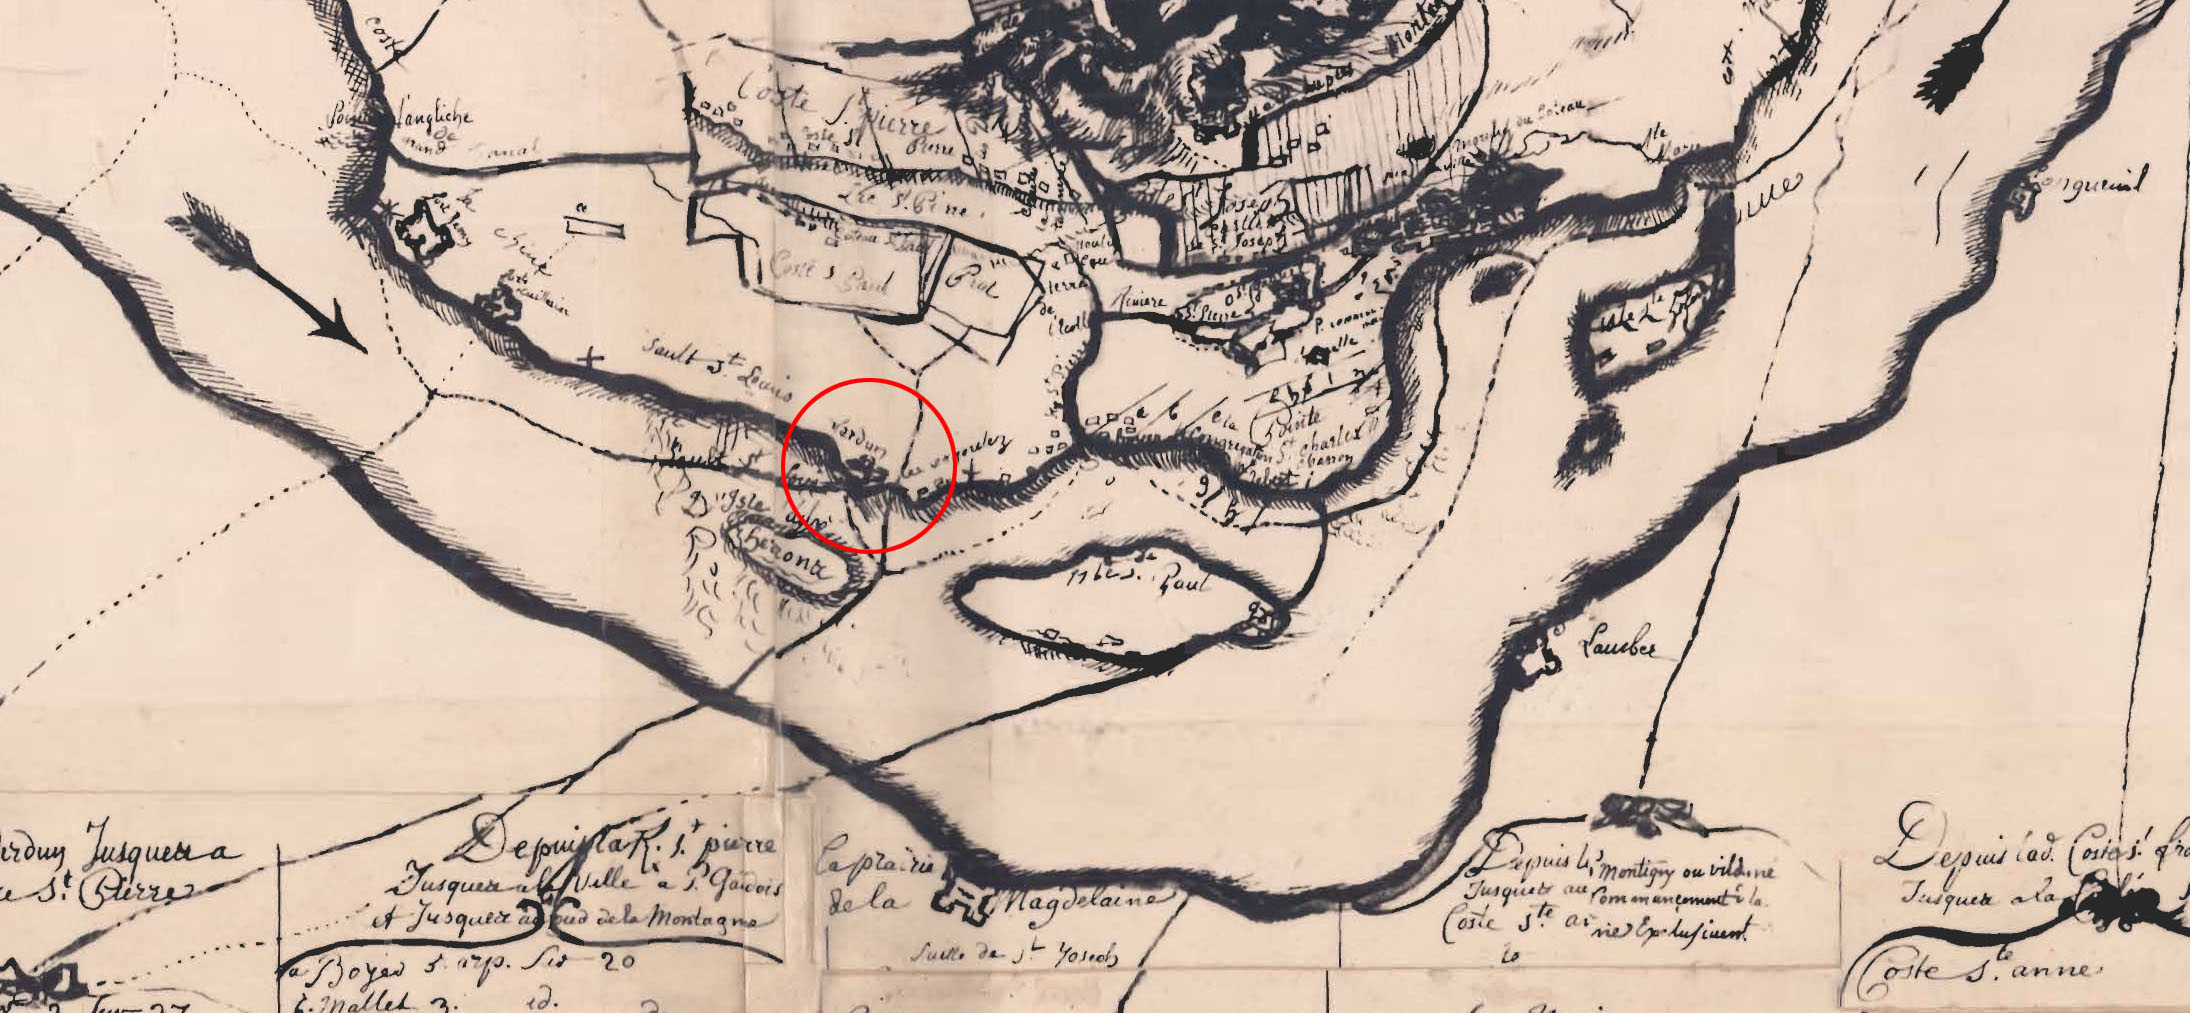 Extrait de la carte de l’île de Montréal de 1702 montrant l’emplacement du fort de Verdun. 